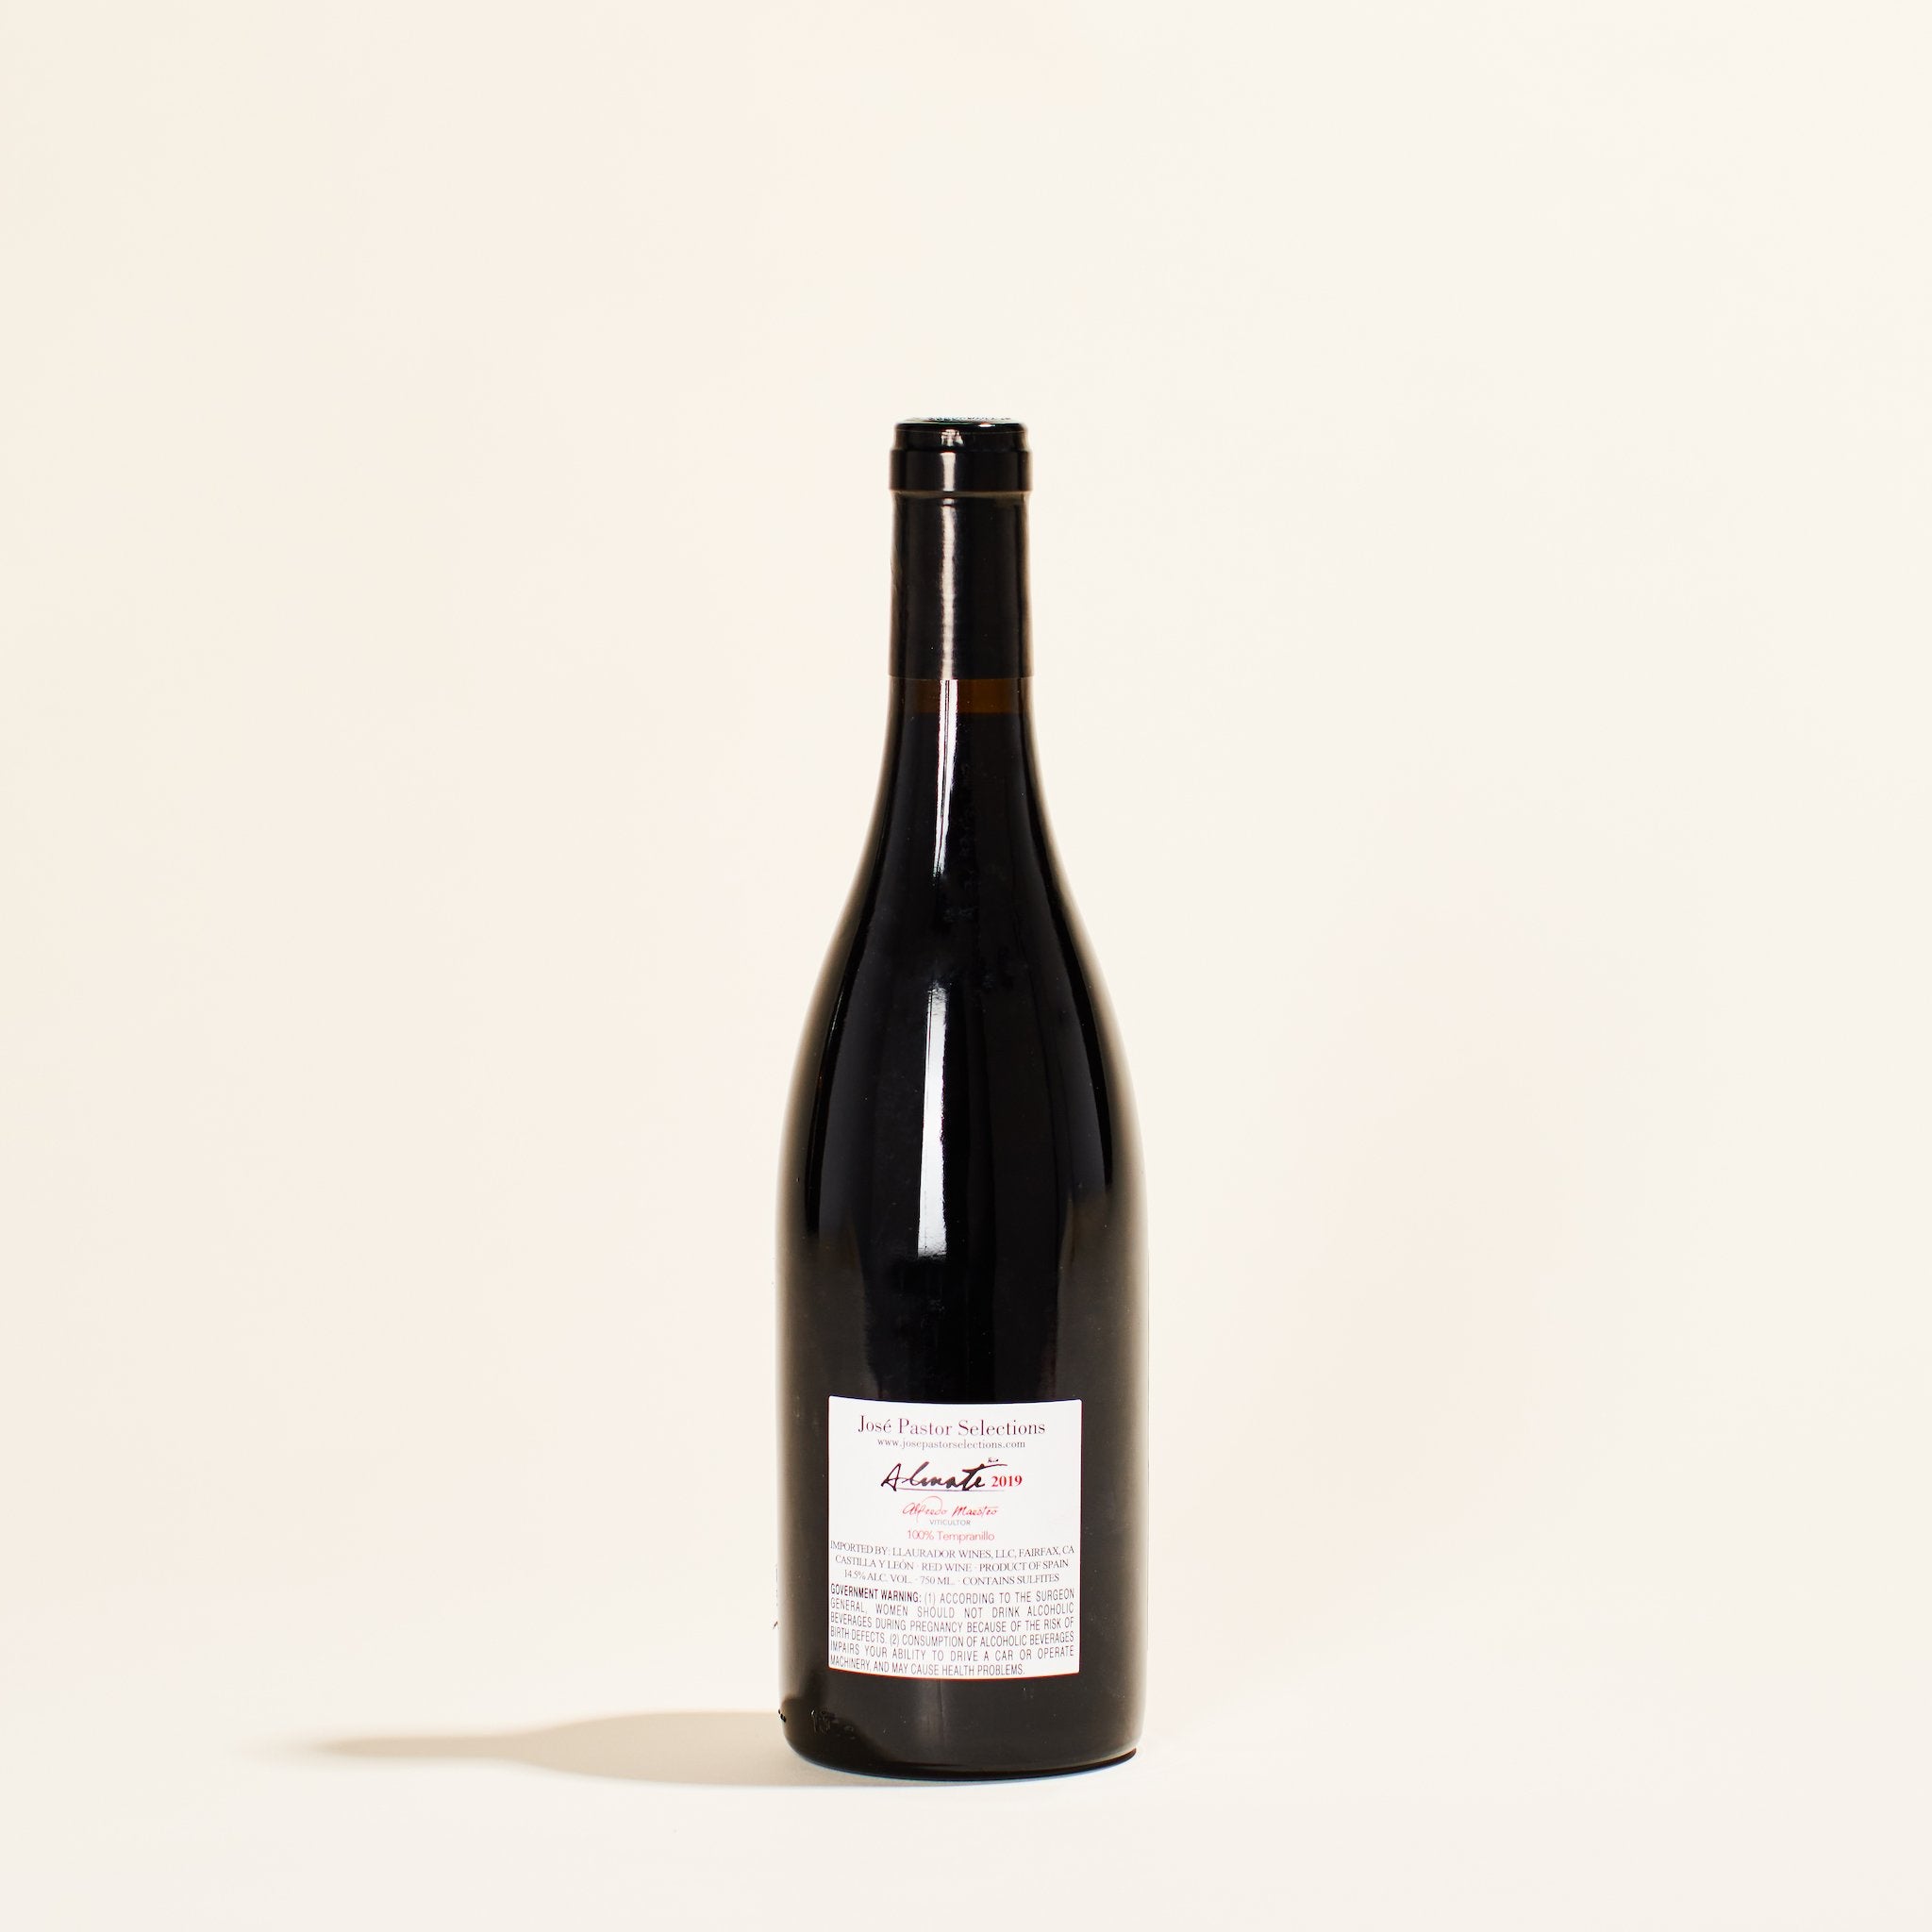 natural red wine bottle vina almate tinto alfredo maestro ribera del duero spain